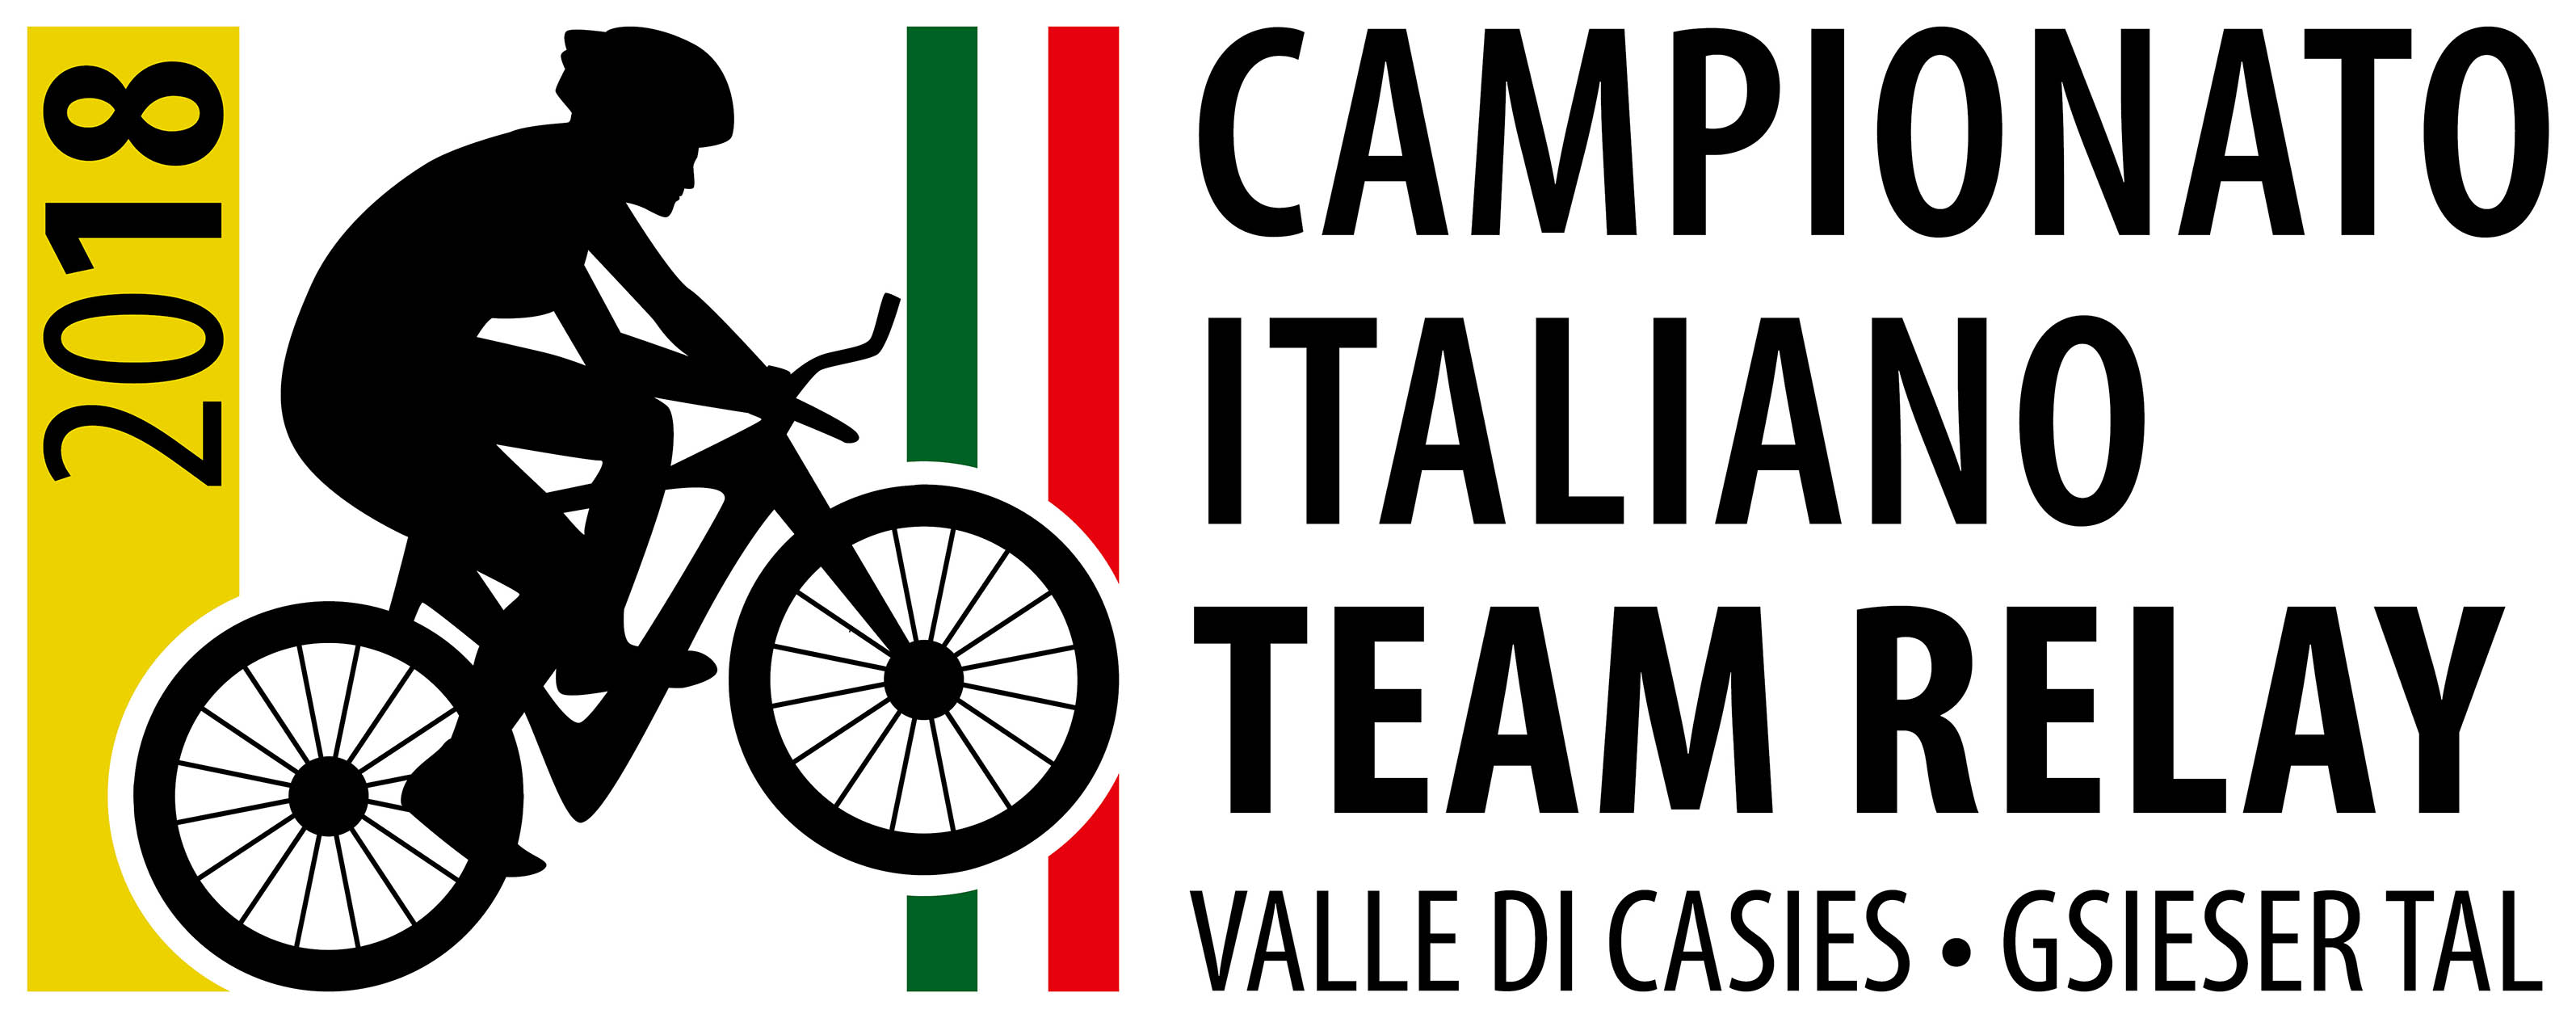 CAMPIONATO ITALIANO XCO 2020 ALLA VAL CASIES! TIMONE ORGANIZZATIVO ALLA SSV PICHL/GSIES